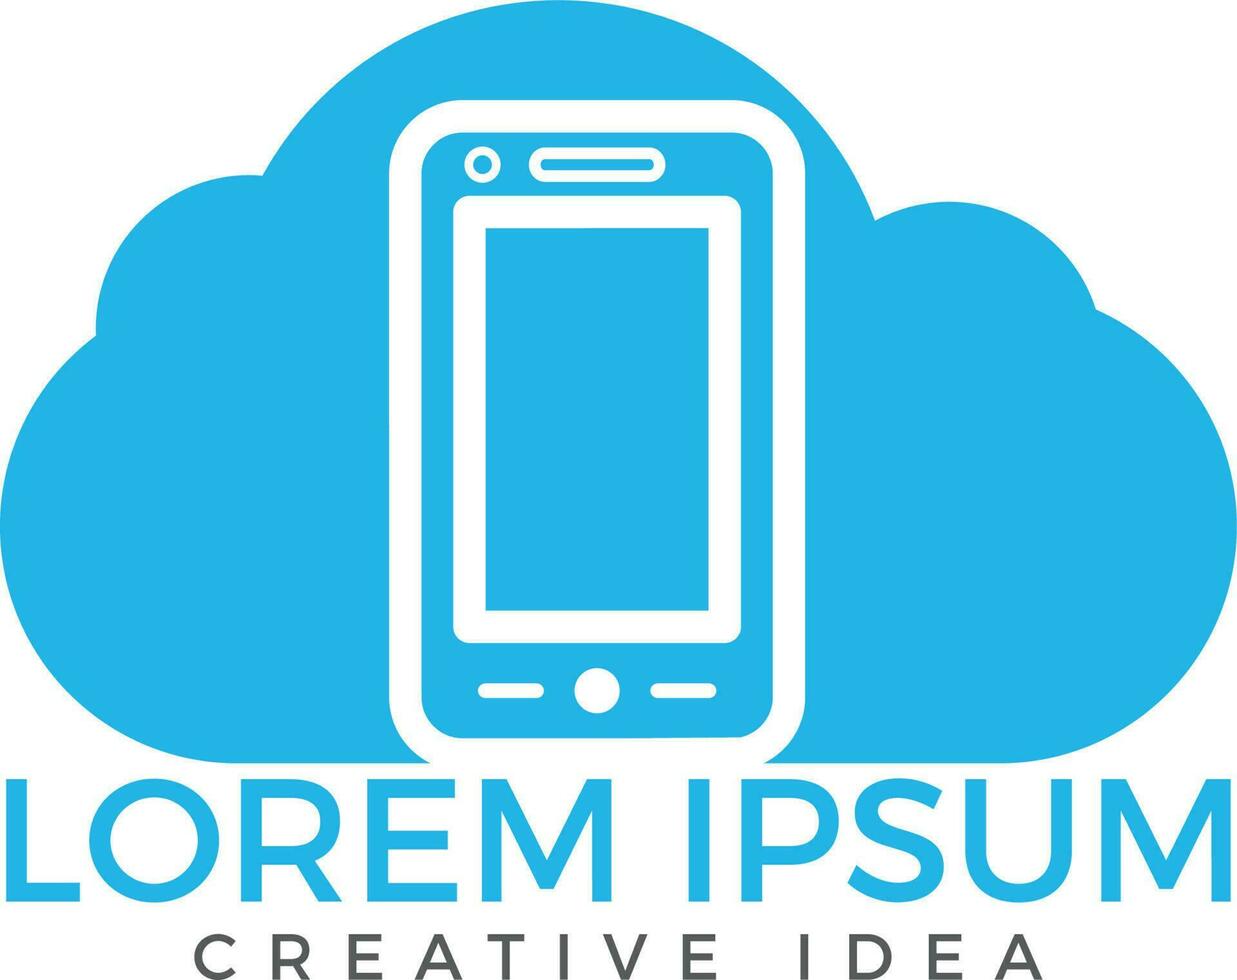 création de logo cloud et téléphone mobile. concept de service de stockage numérique et informatique. vecteur